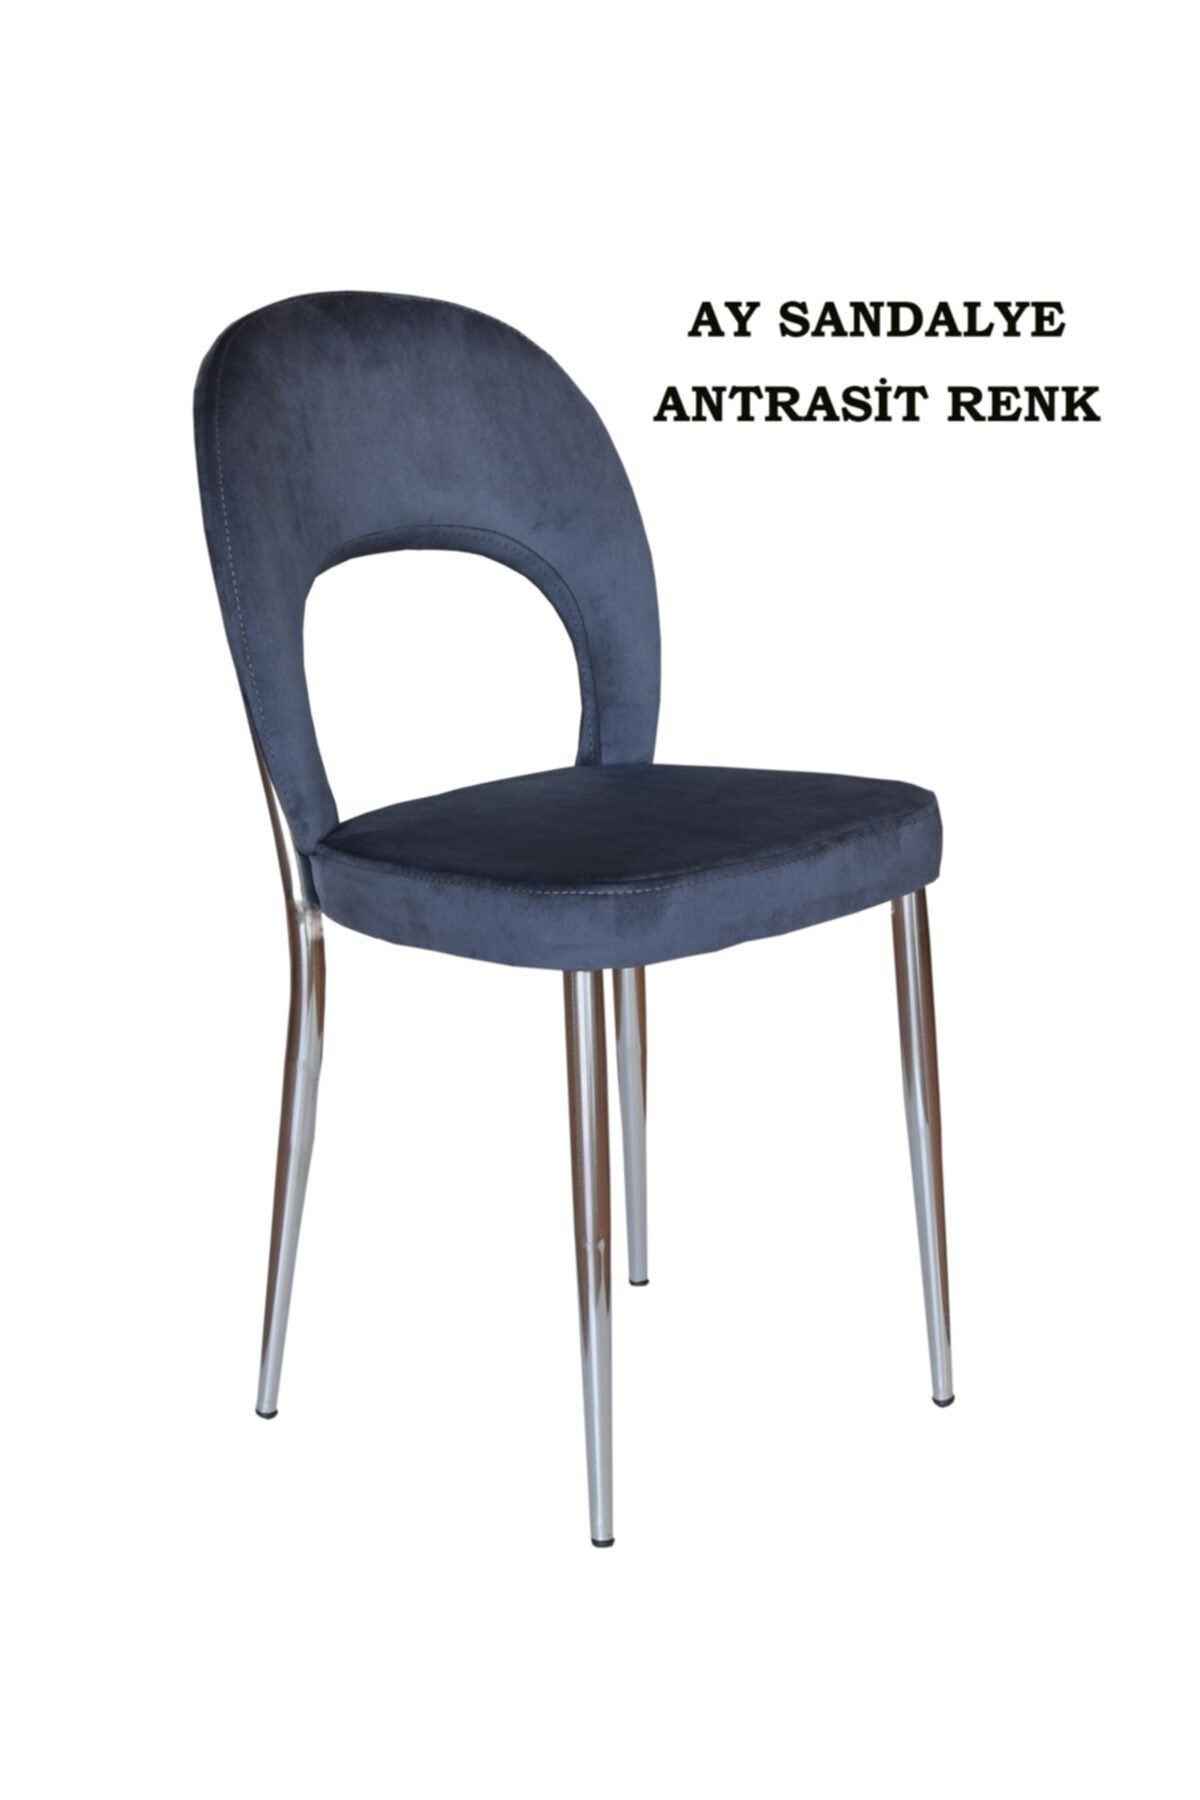 Ankhira Ay Sandalye, Mutfak Sandalyesi, Silinebilir Antrasit Renk Kumaş, Krom Ayaklı